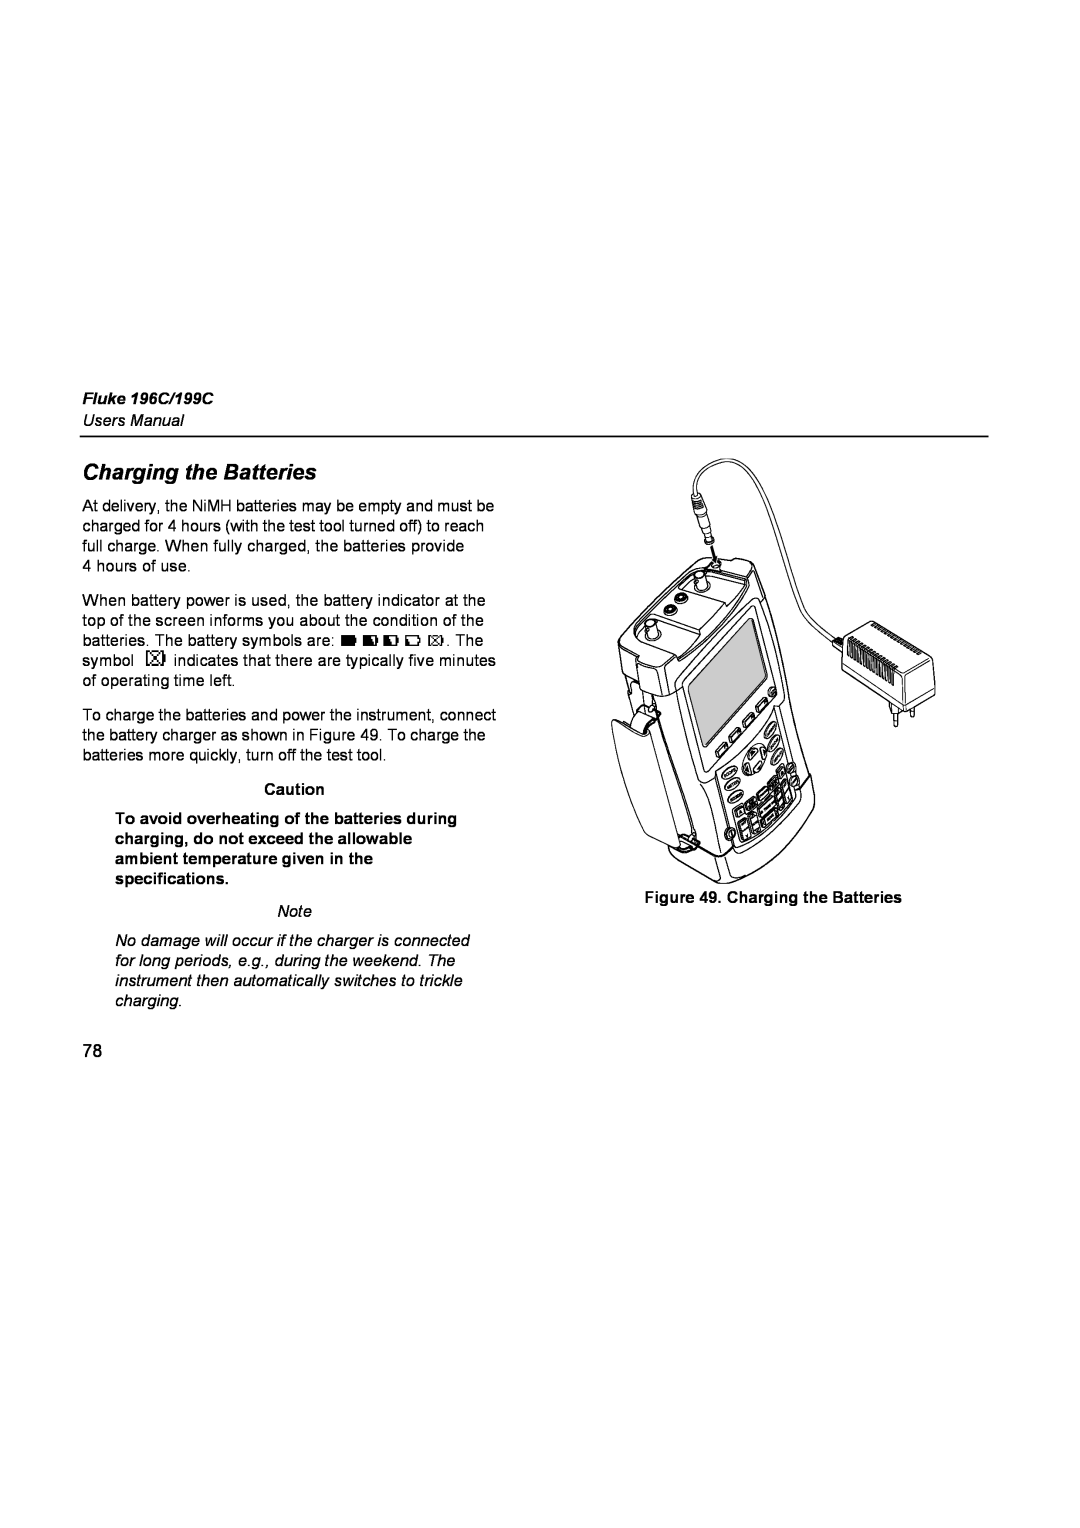 Fluke user manual Charging the Batteries, Fluke 196C/199C 